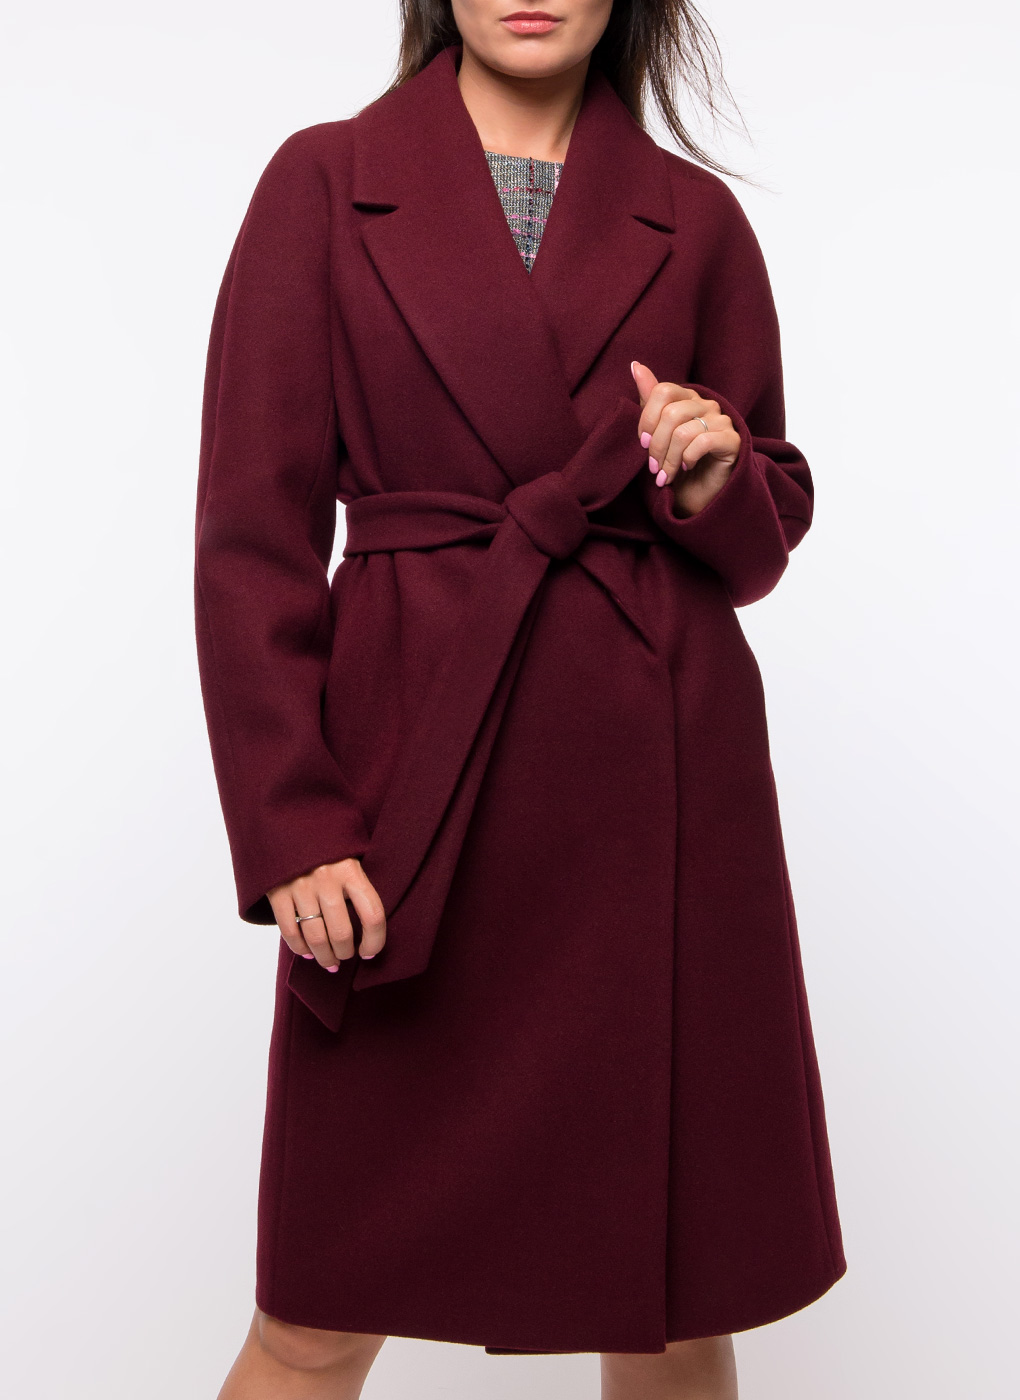 Бордовое женское пальто